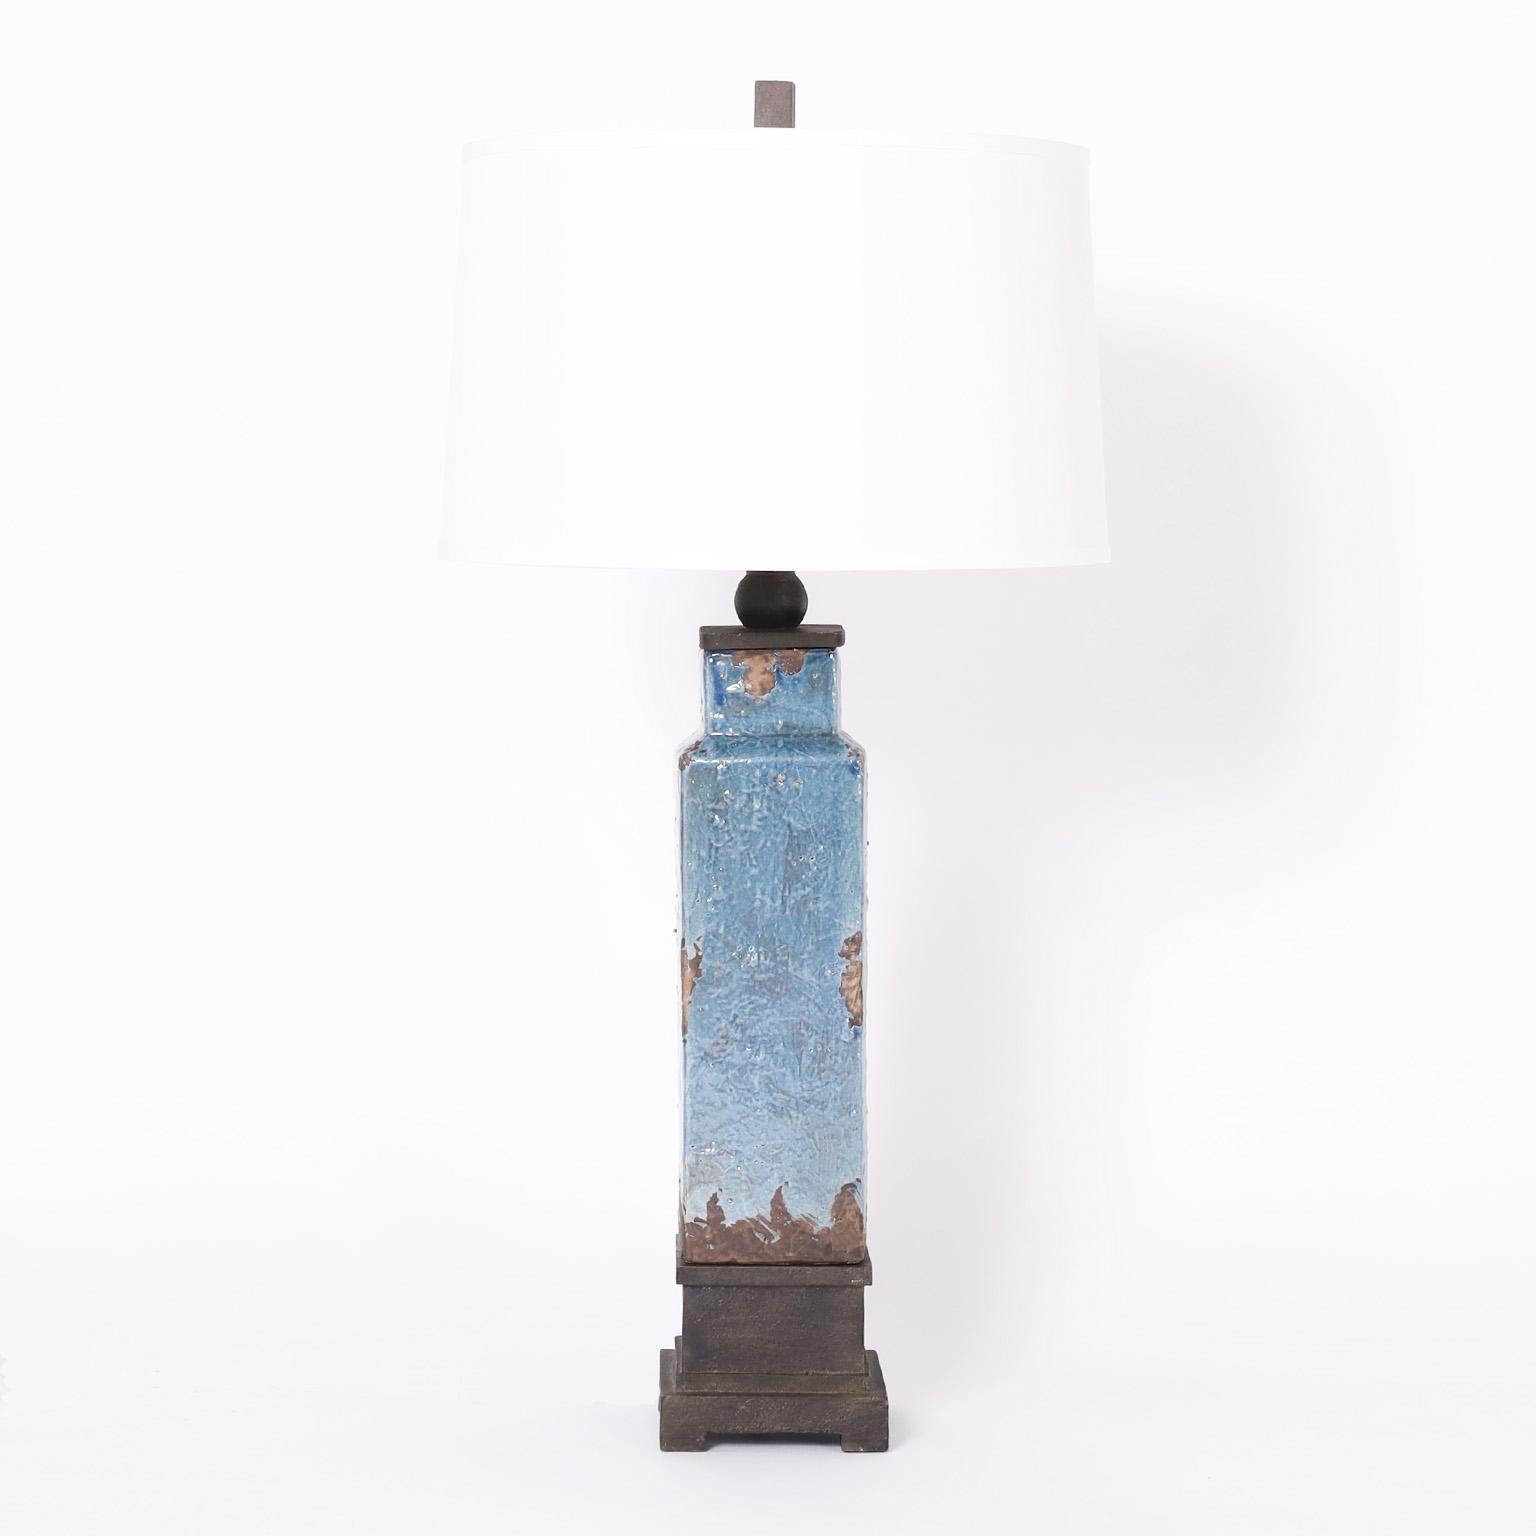 Paire de lampes de table vintage en terre cuite, de forme simple et élégante, décorées d'un glaçage bleu vieilli, avec un capuchon et une base modernes mais classiques en métal peint.